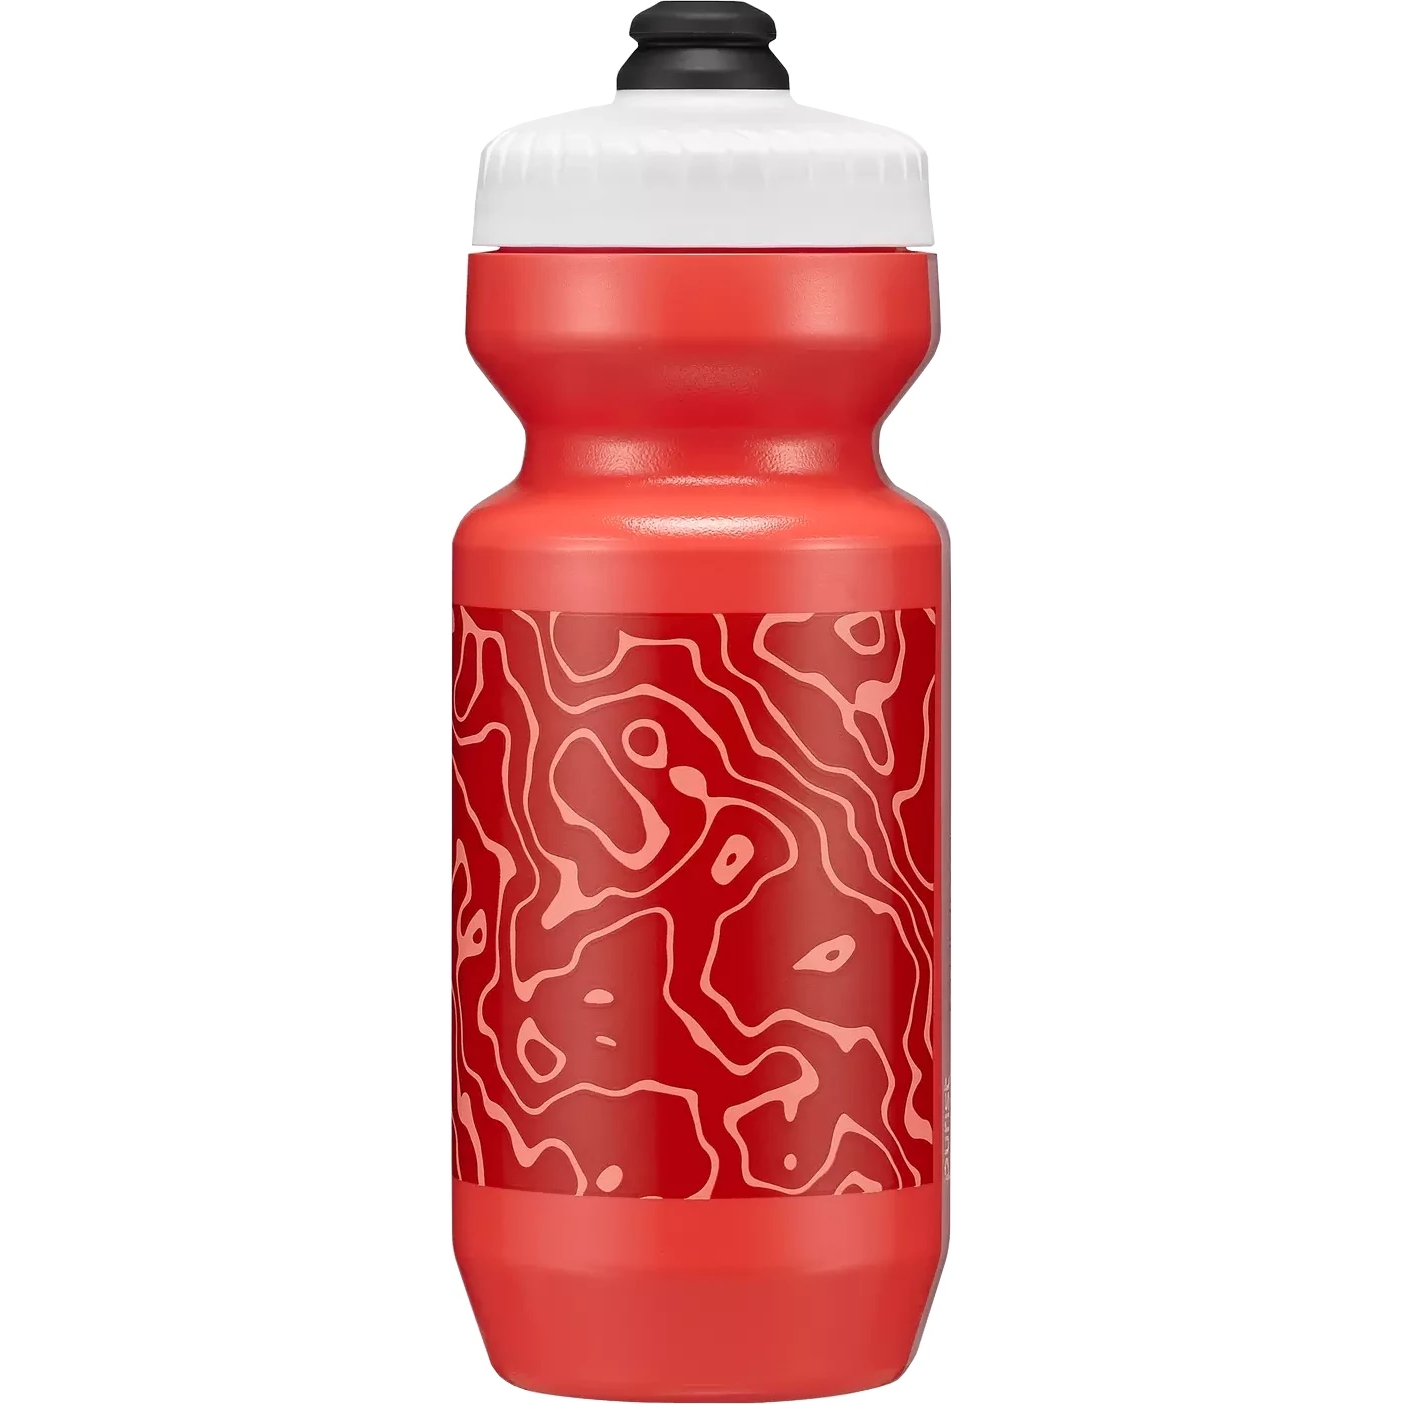 Produktbild von Specialized Purist MoFlo 2.0 Trinkflasche 650ml - Fluid Lava